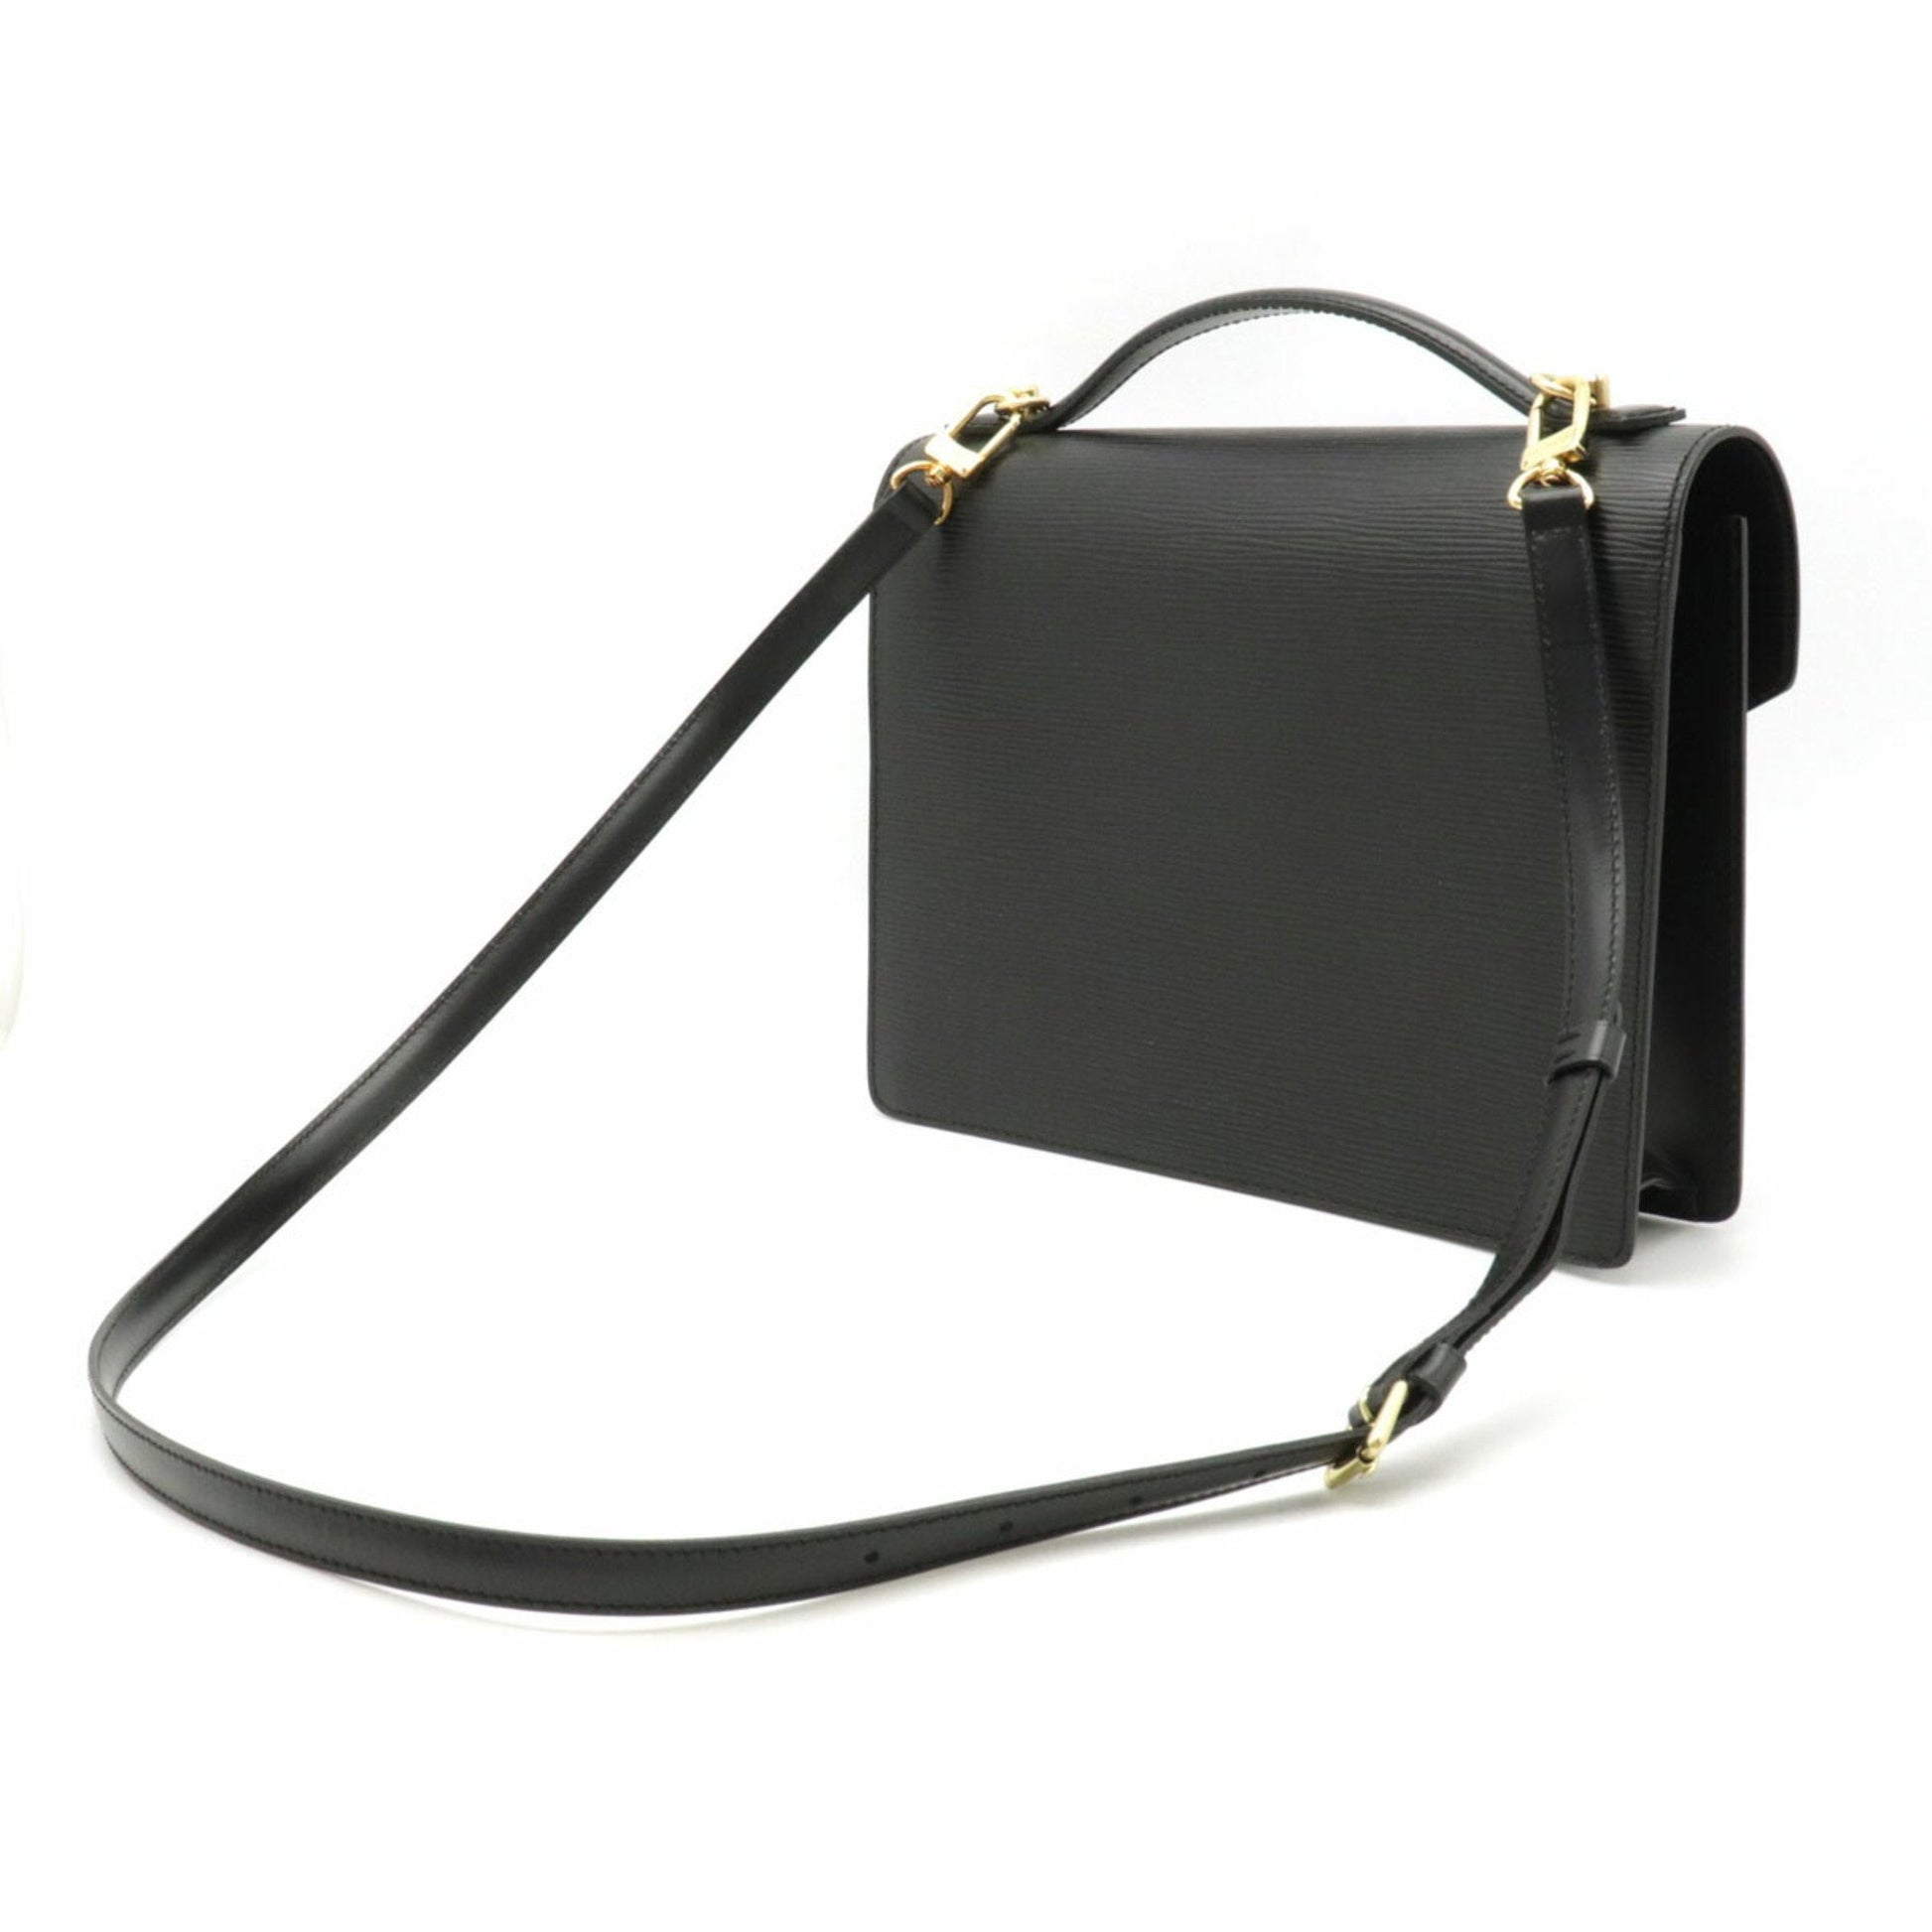 Louis Vuitton Monceau Shoulder bag 398466, HealthdesignShops